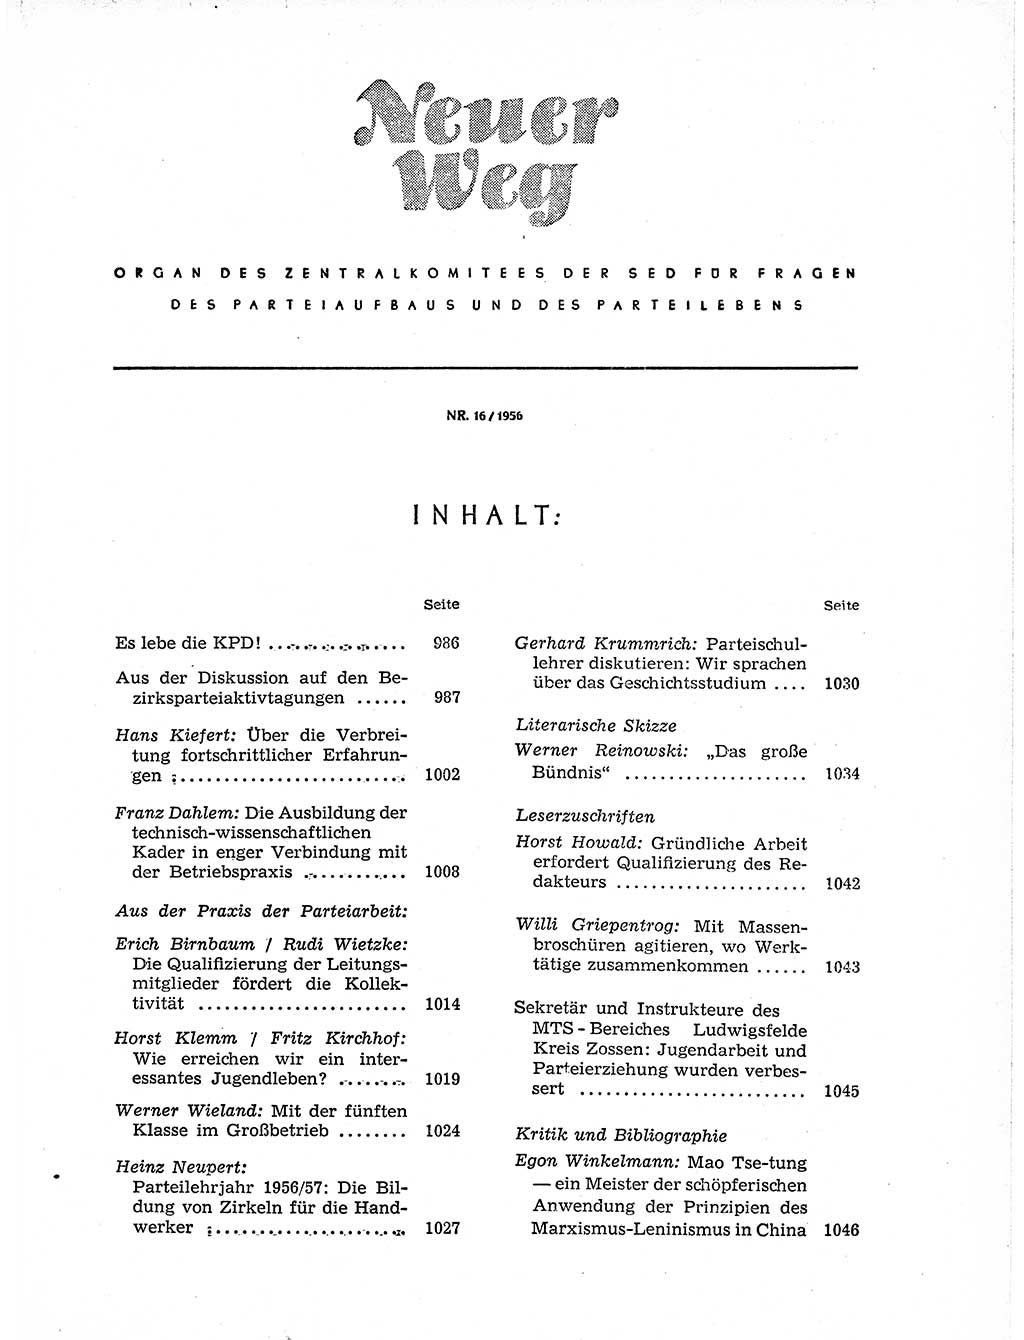 Neuer Weg (NW), Organ des Zentralkomitees (ZK) der SED (Sozialistische Einheitspartei Deutschlands) für Fragen des Parteiaufbaus und des Parteilebens, 11. Jahrgang [Deutsche Demokratische Republik (DDR)] 1956, Seite 985 (NW ZK SED DDR 1956, S. 985)